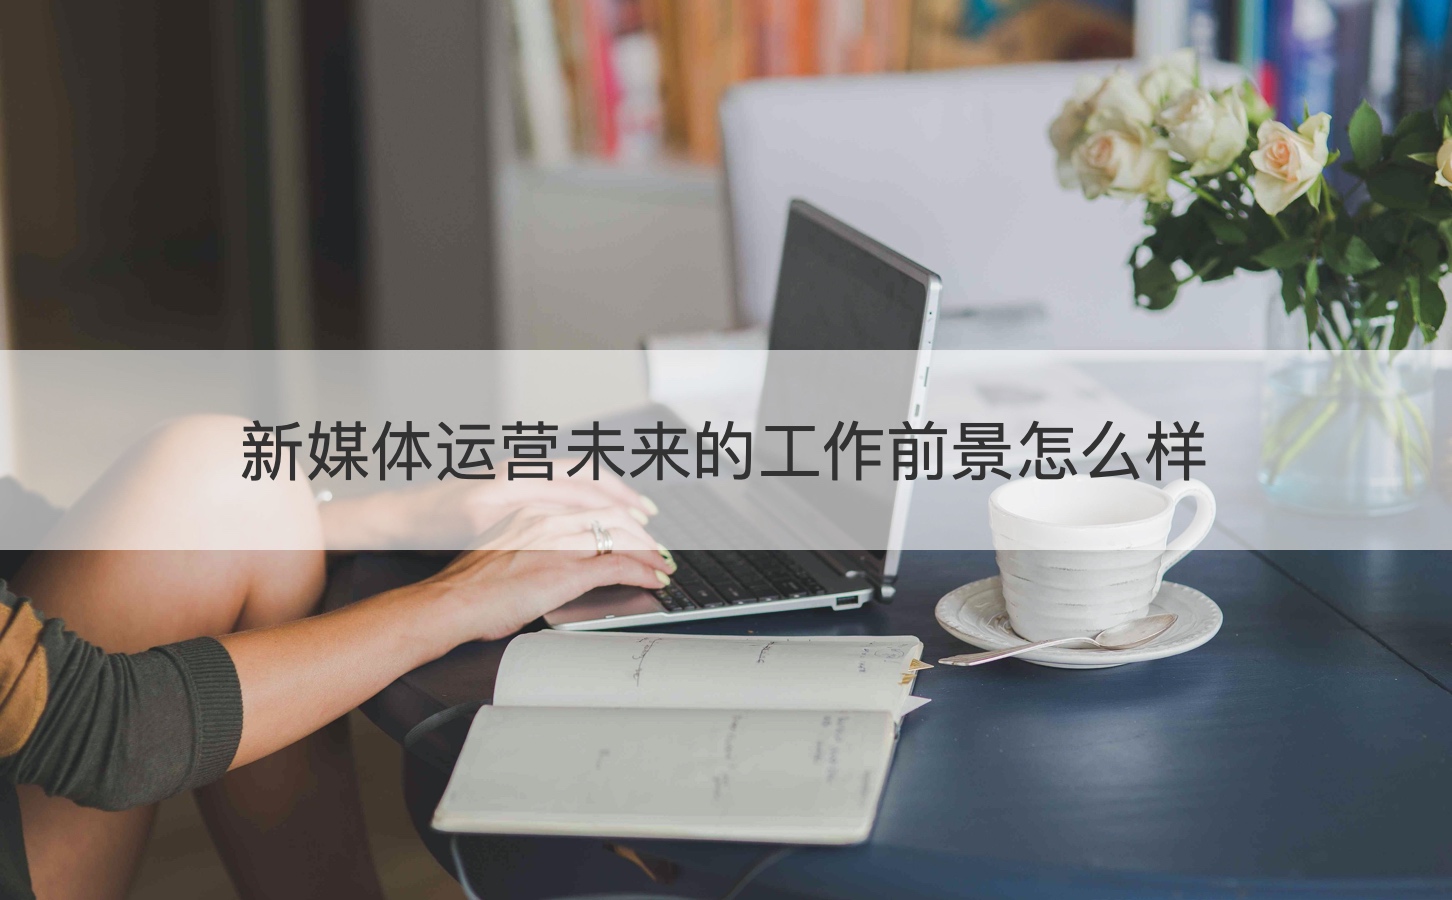 新媒体运营未来的工作前景怎么样 桂林新媒体运营最新招聘信息